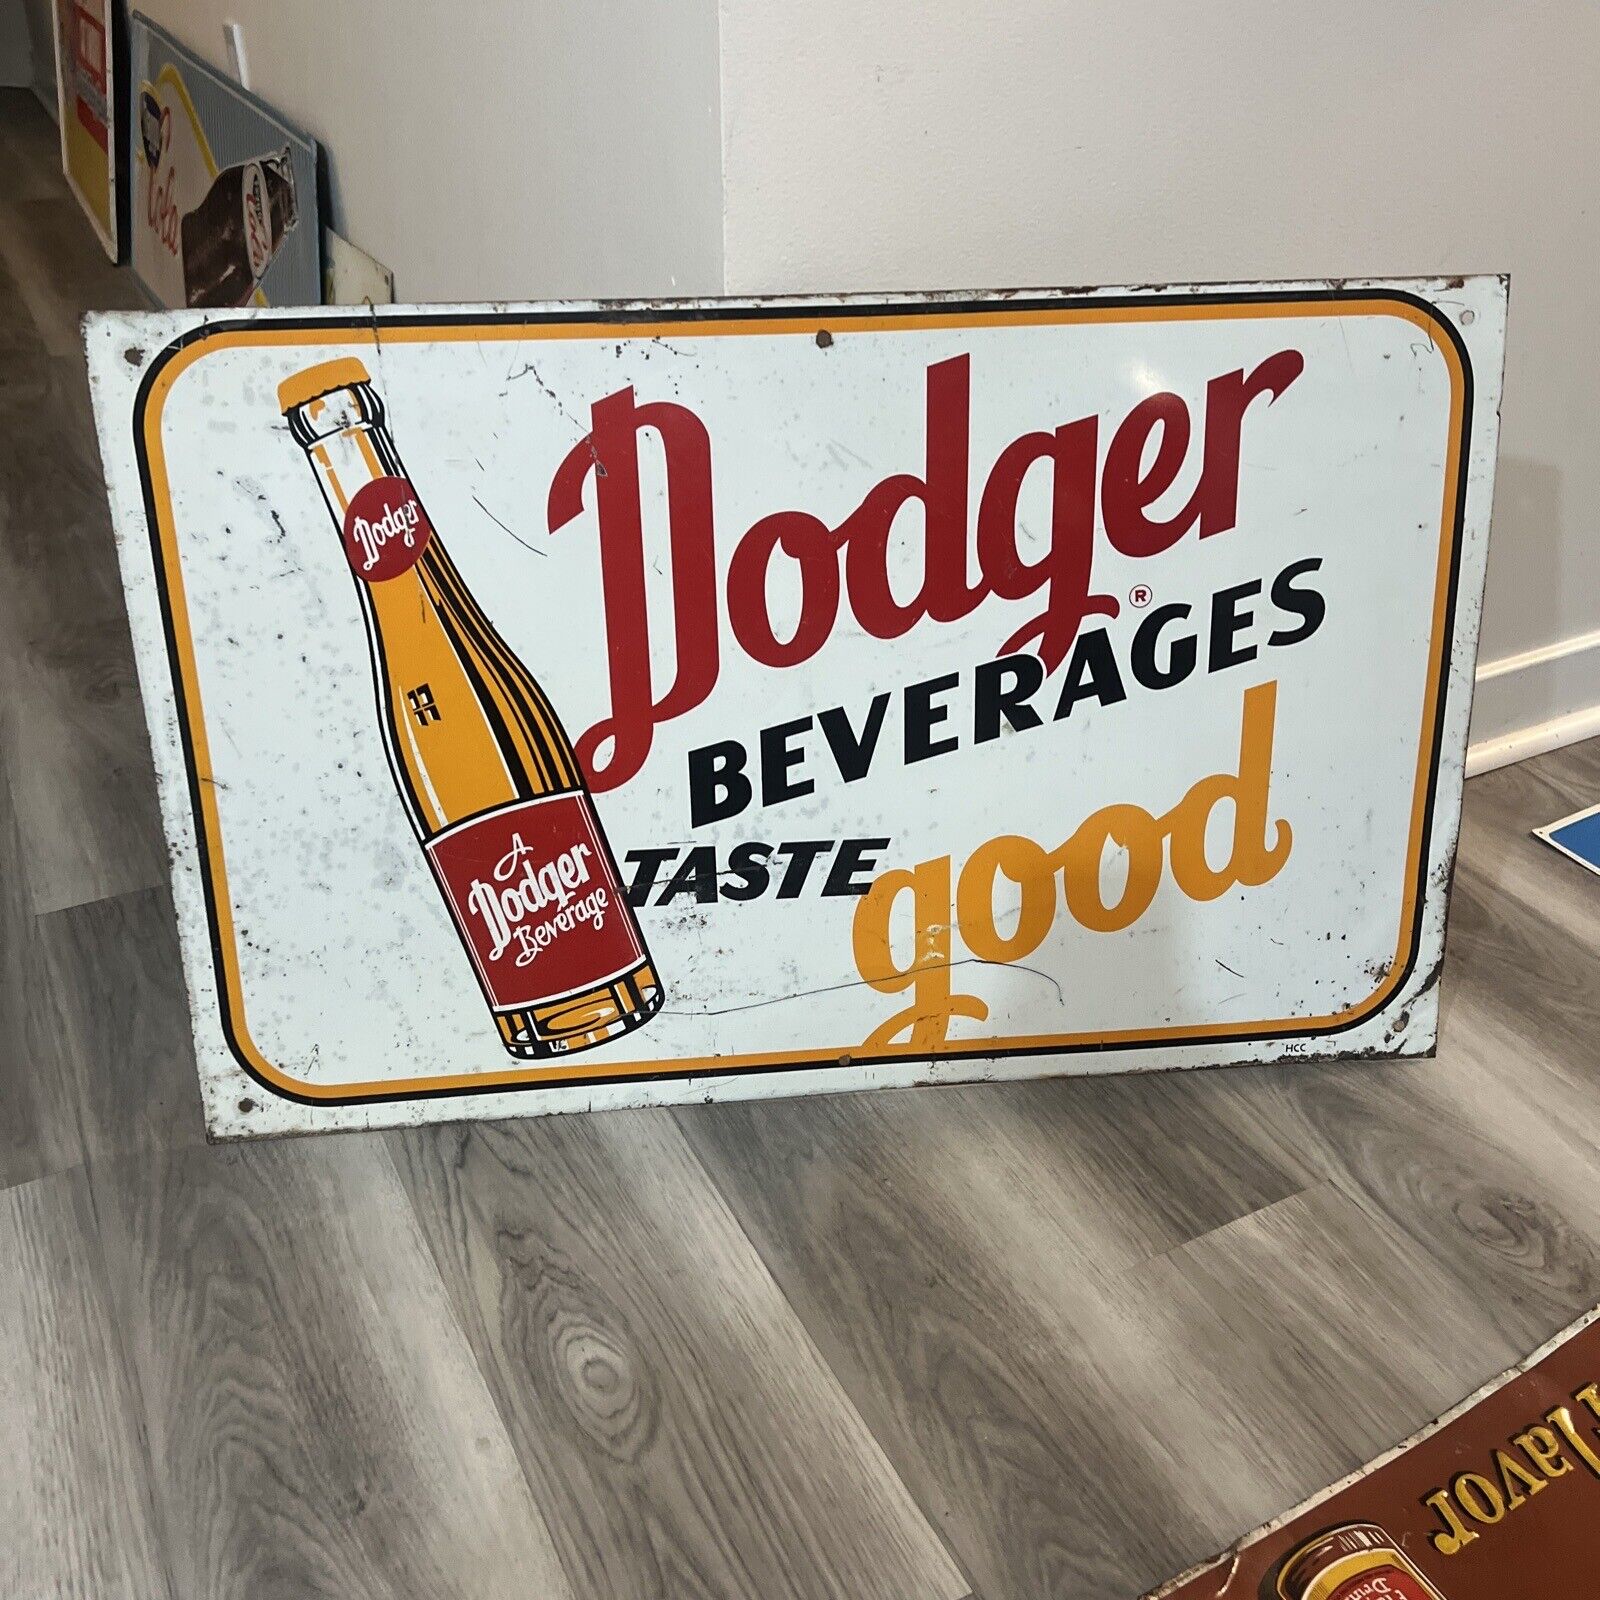 c.1950s Original Vintage Dodger Beverages Sign Metal Taste Good Bottle Soda Gas